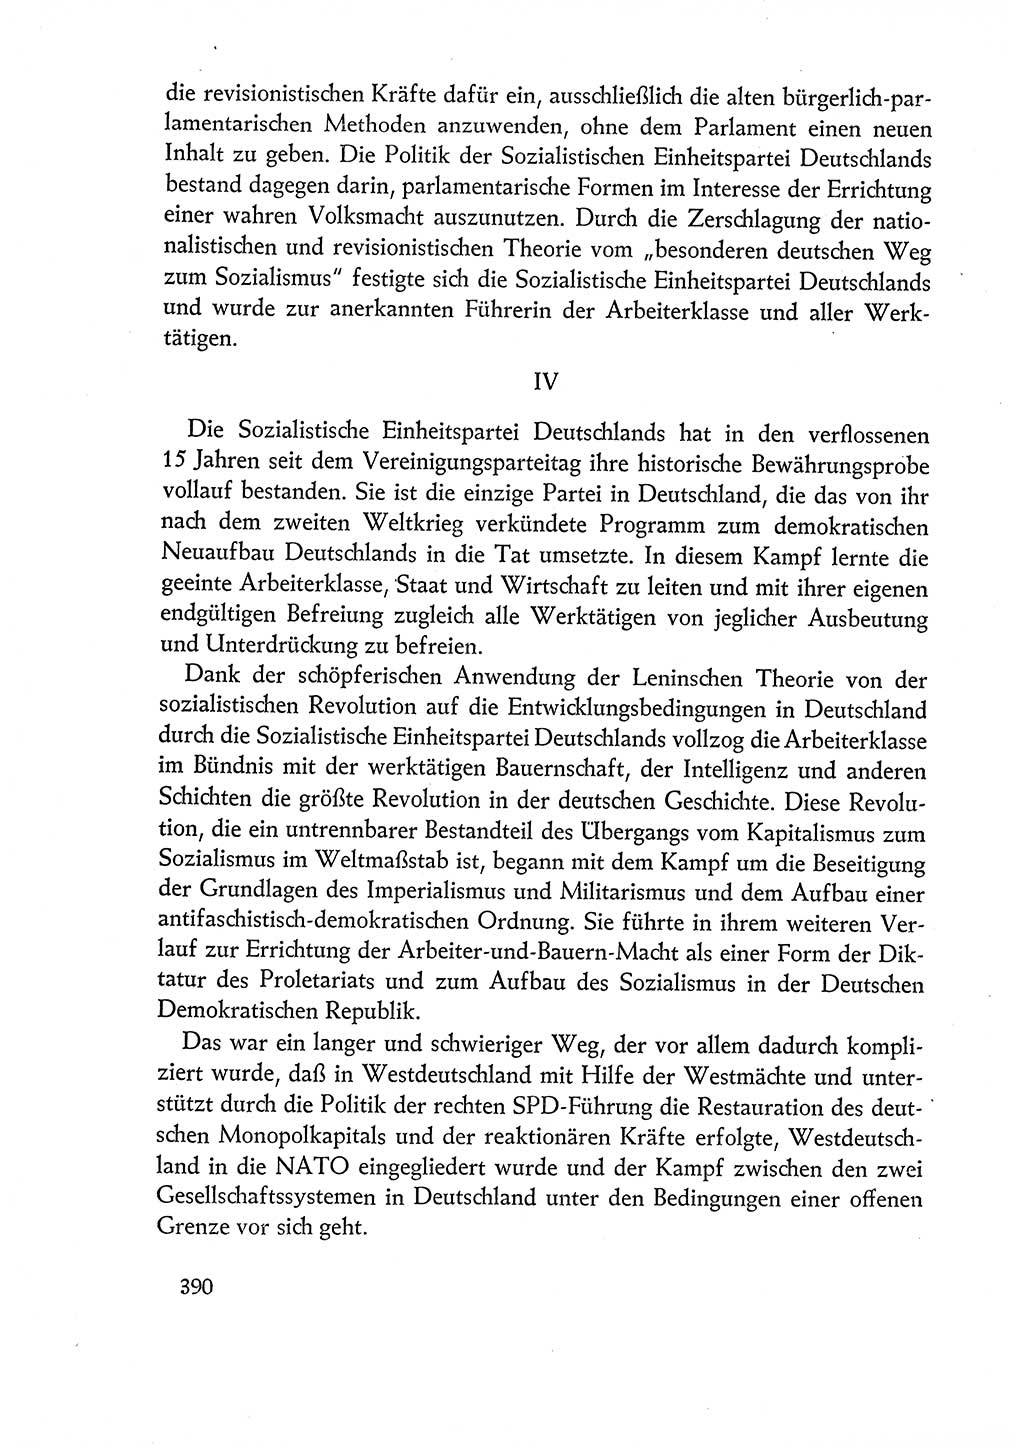 Dokumente der Sozialistischen Einheitspartei Deutschlands (SED) [Deutsche Demokratische Republik (DDR)] 1960-1961, Seite 390 (Dok. SED DDR 1960-1961, S. 390)